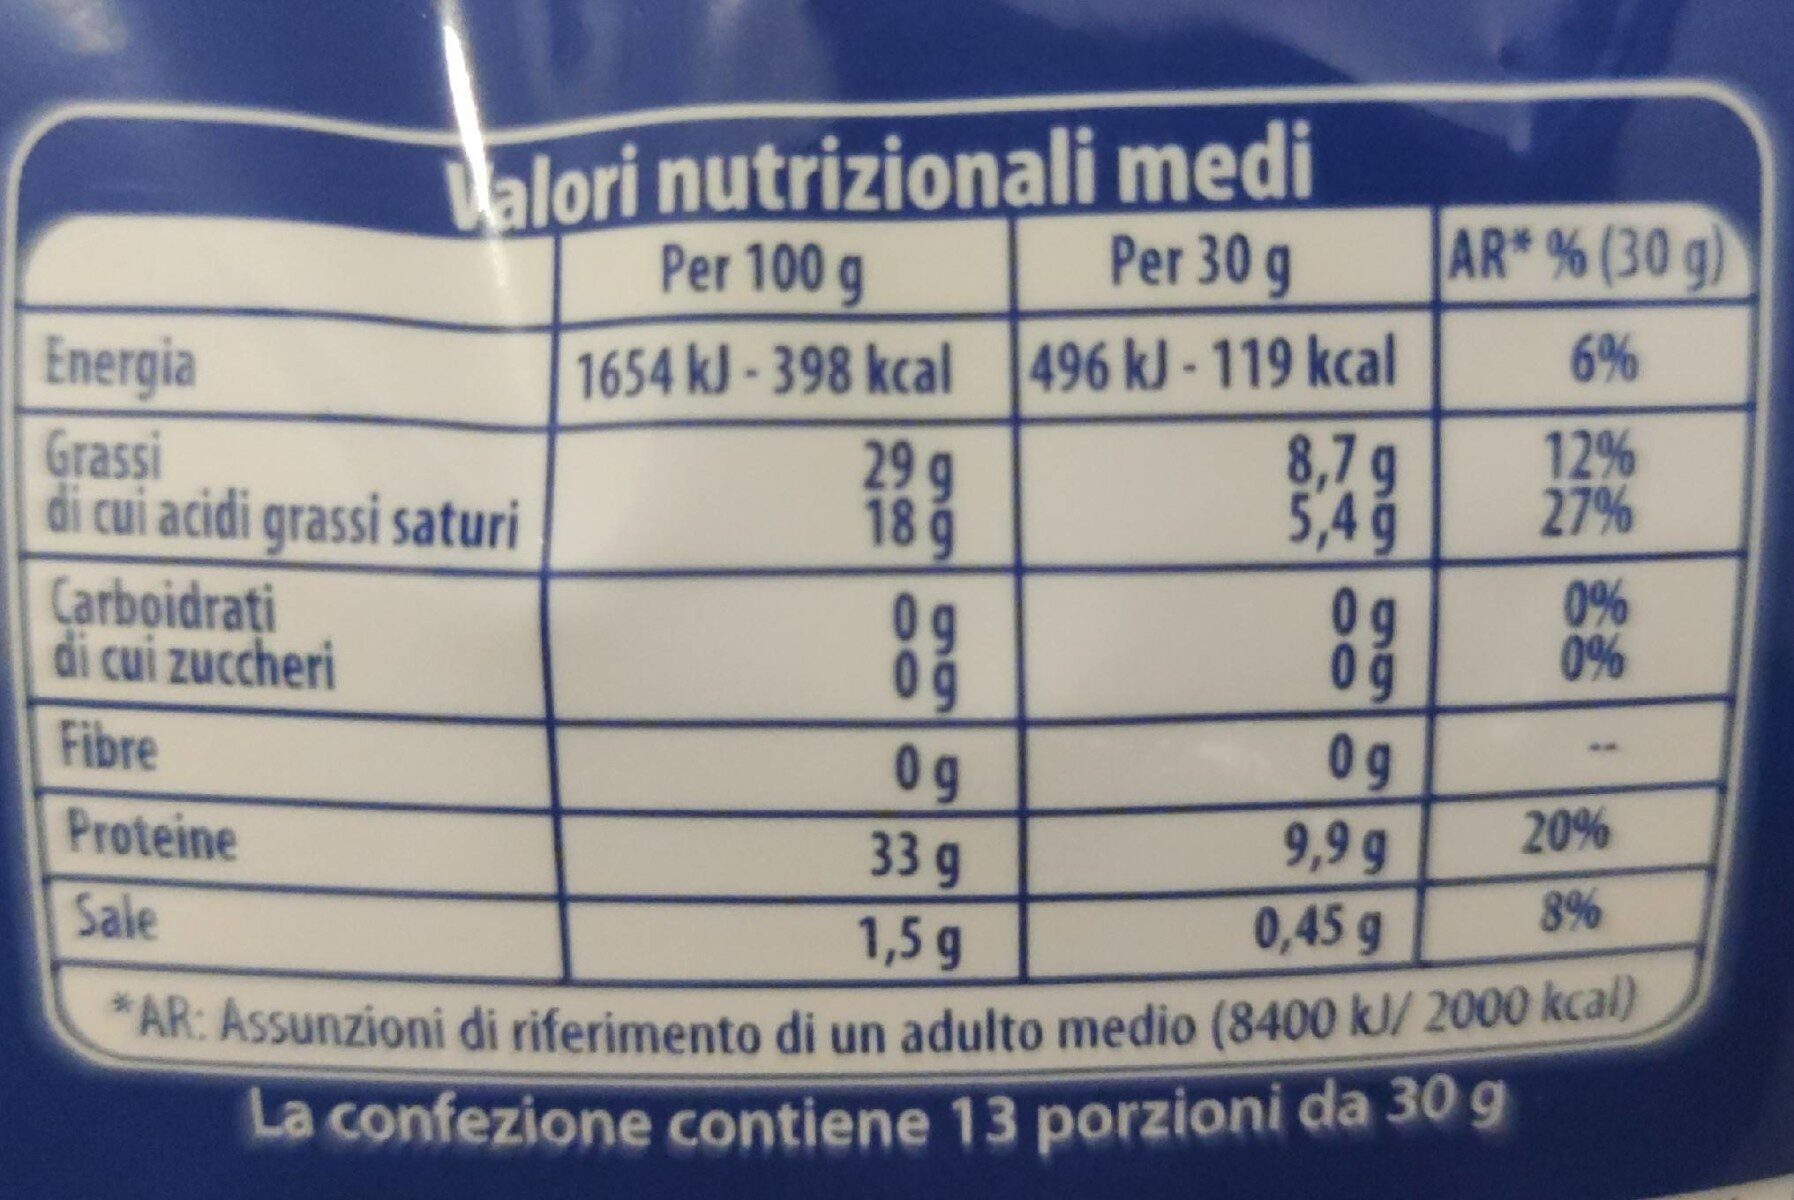 Grana padano bocconcini - Nutrition facts - it